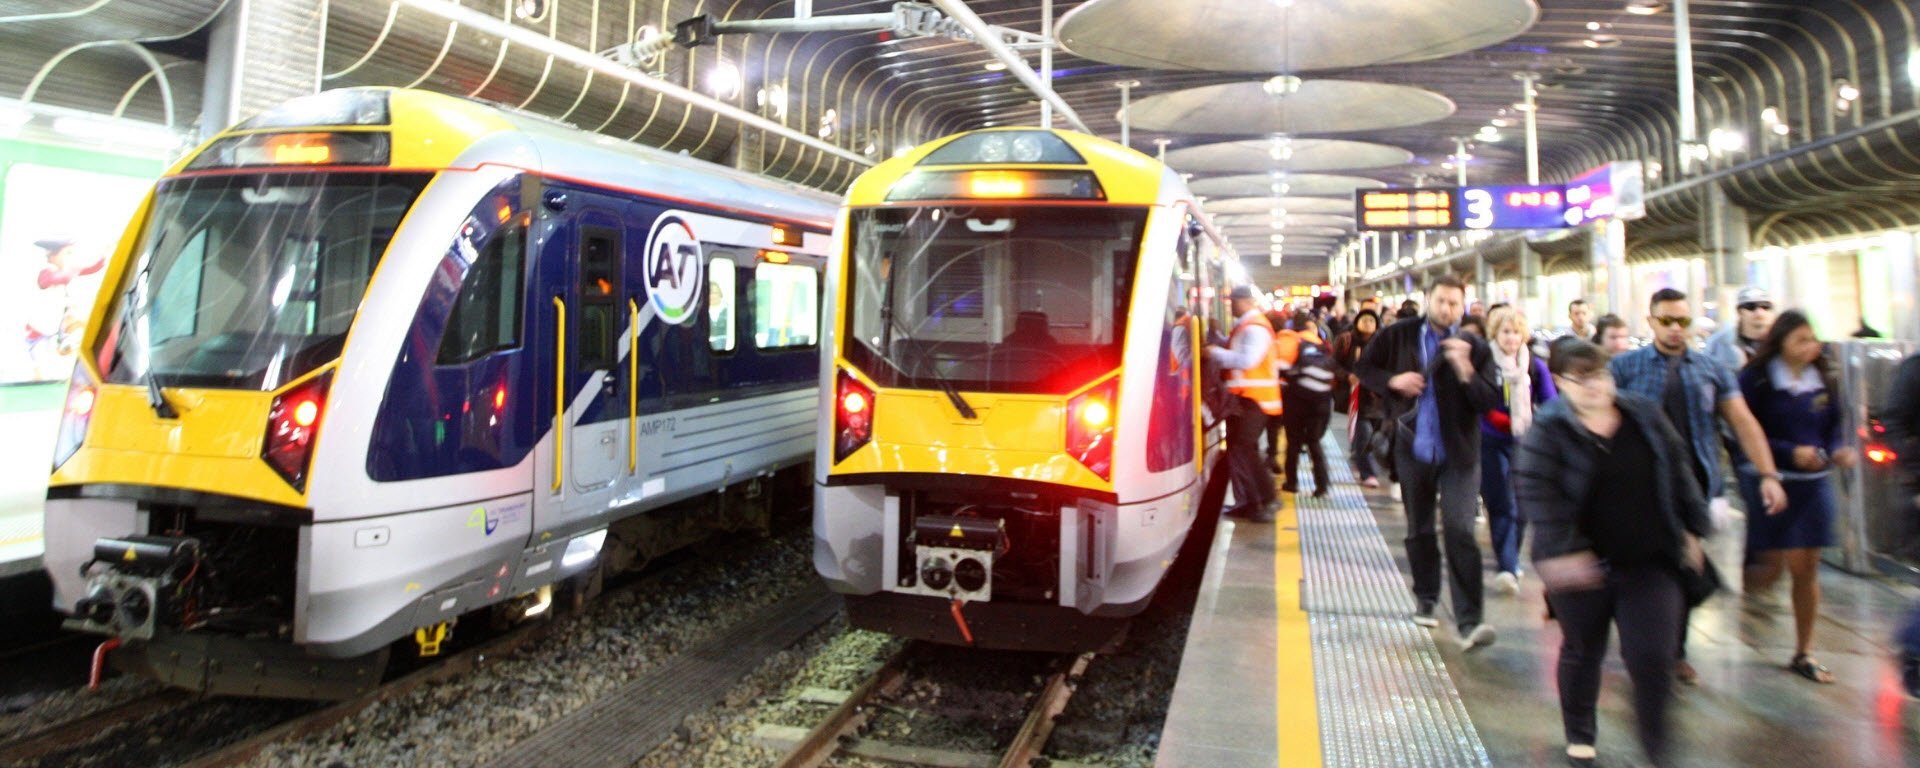 Transdev Auckland rail platform passangers